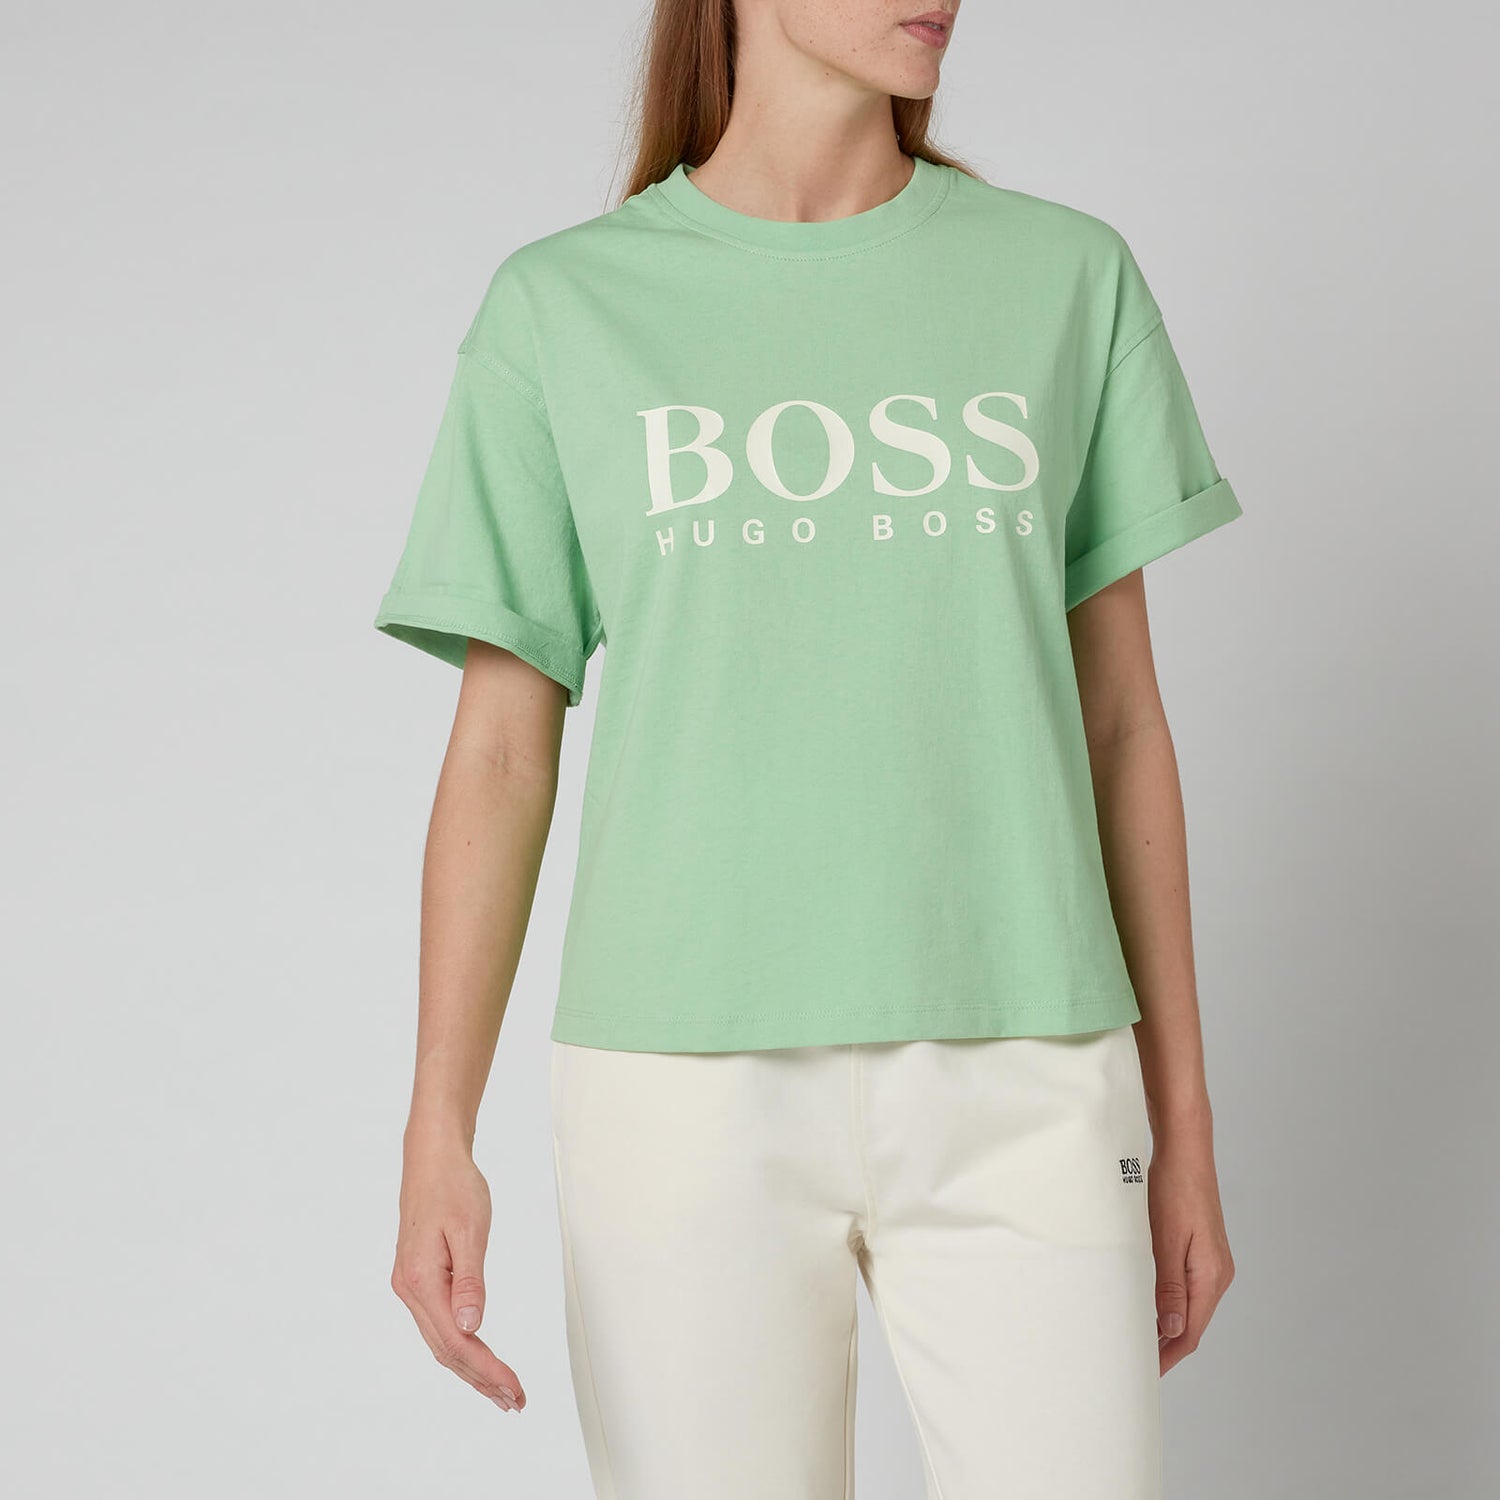 BOSS Women's C_Evina 1_Active T-Shirt - Light Emerald